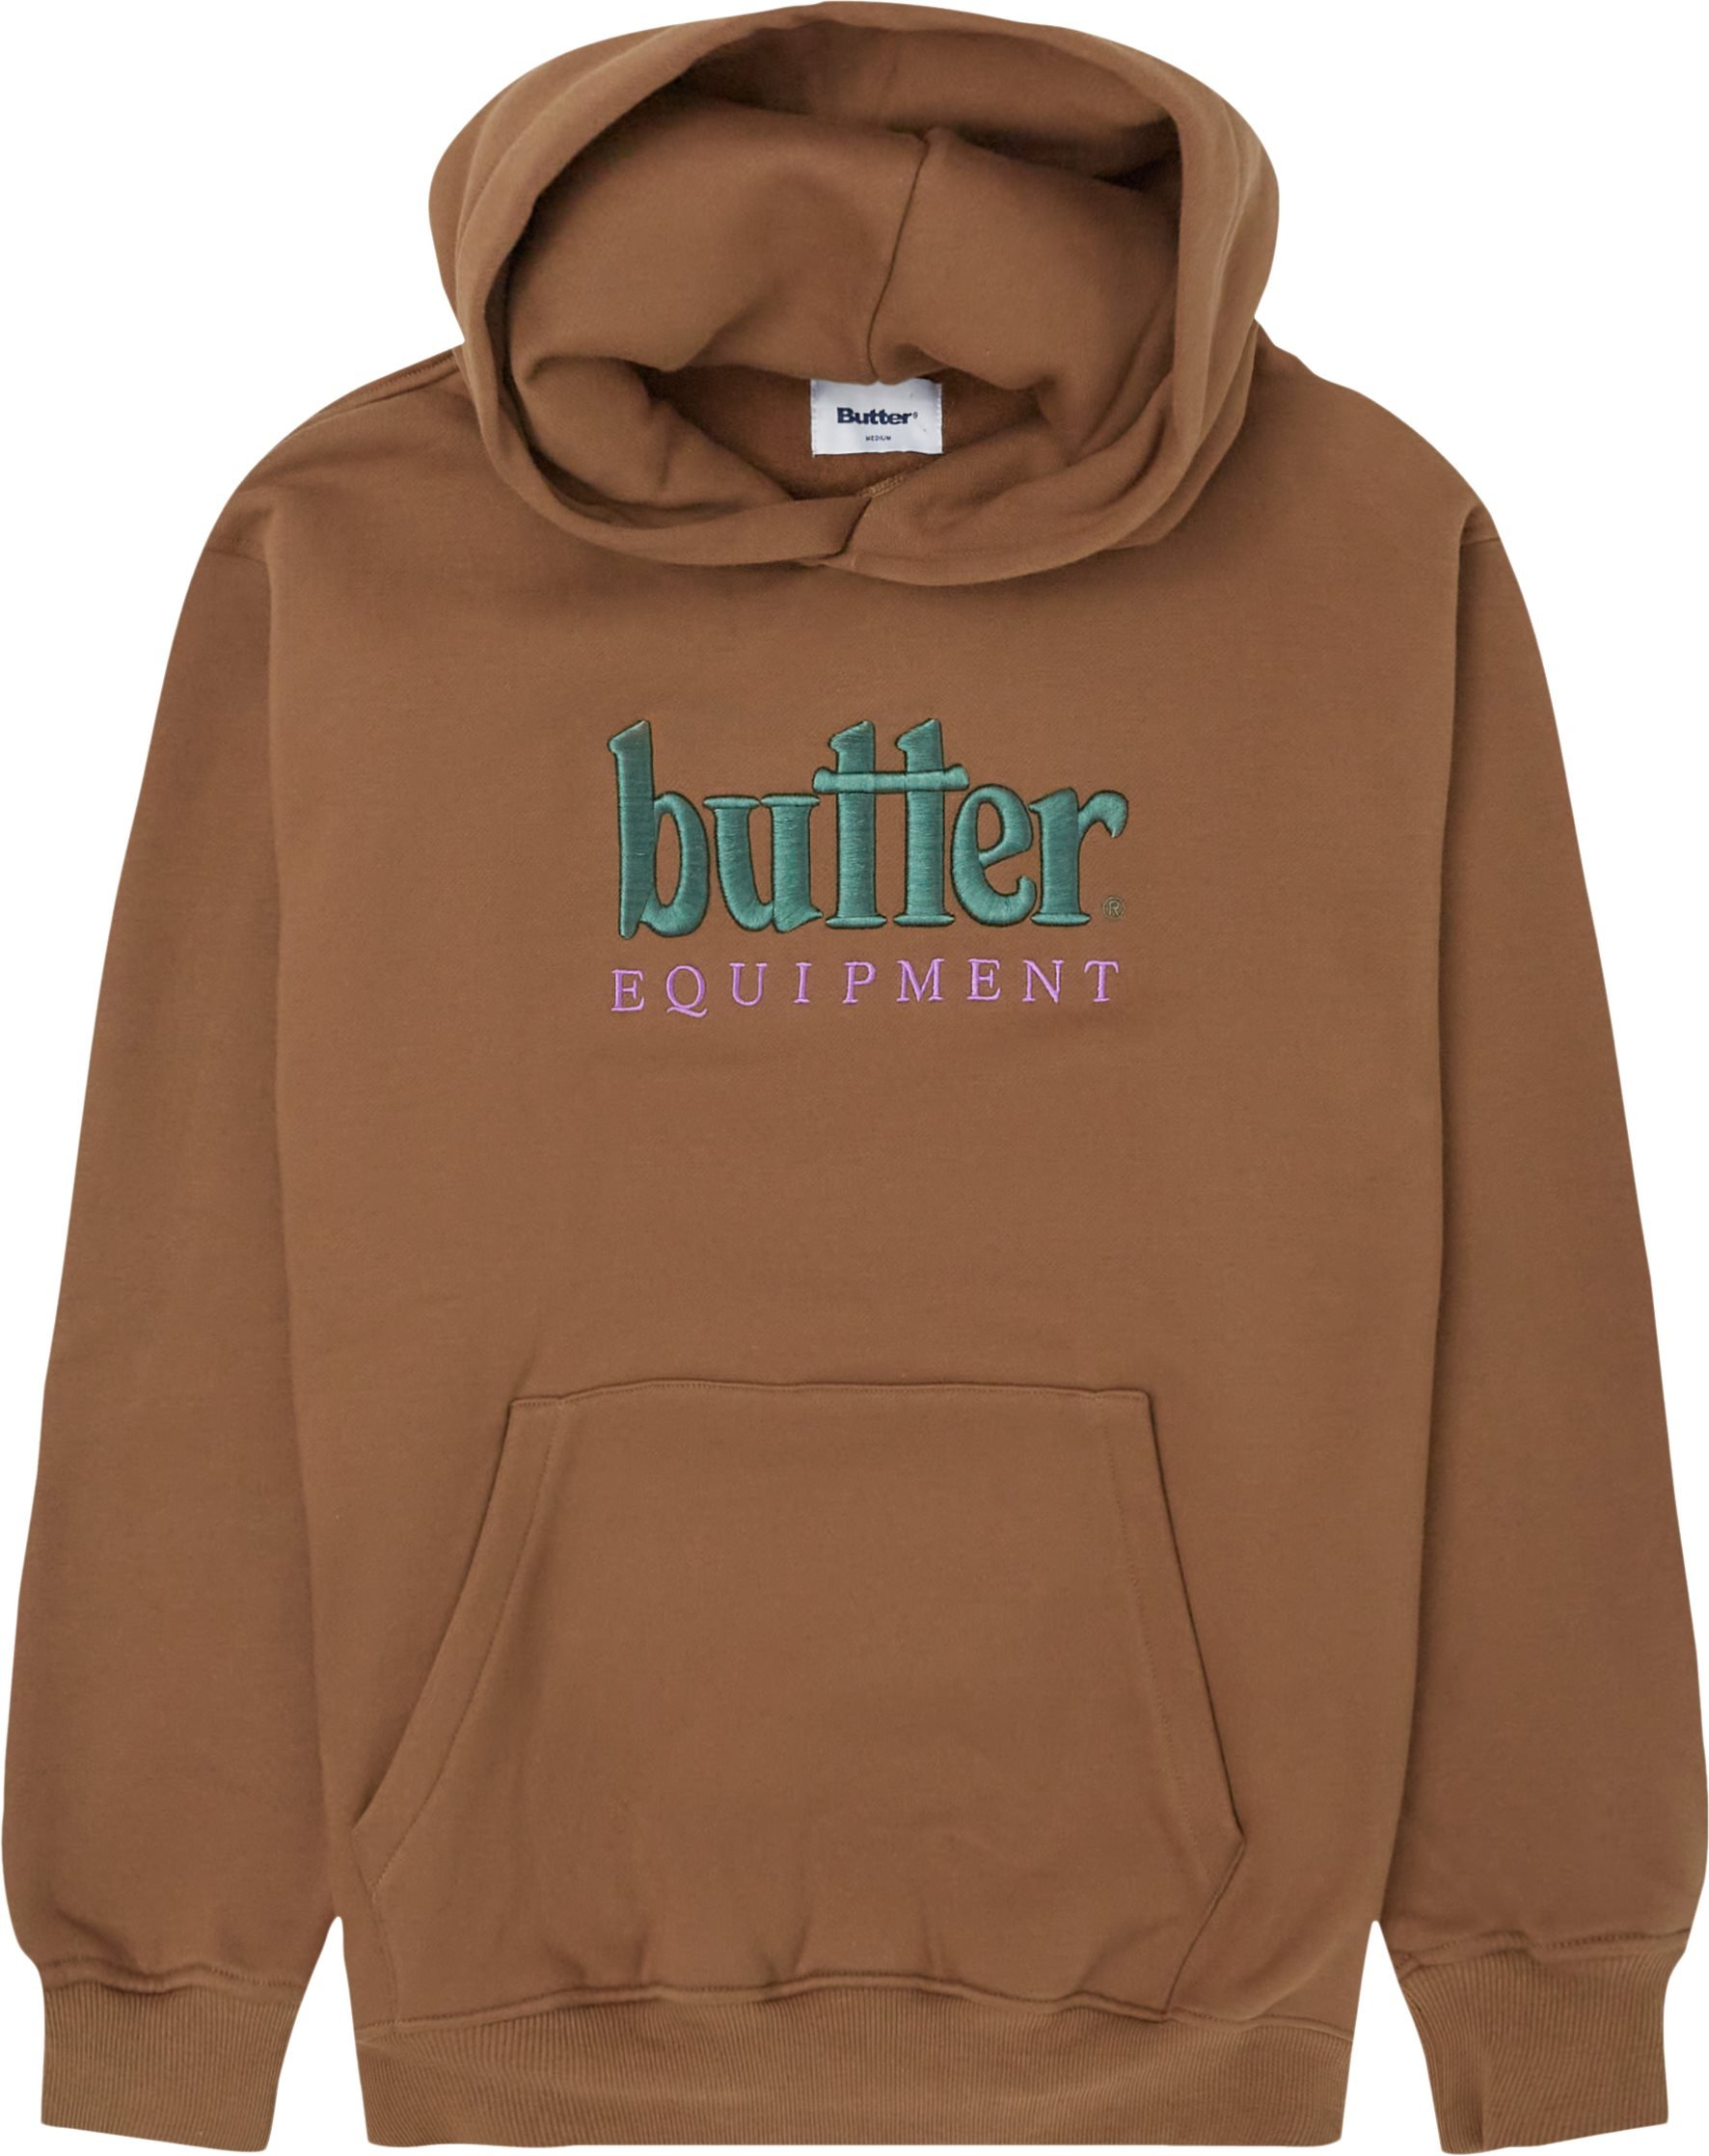 Equipment Hoodie - Sweatshirts - Regular fit - Brown